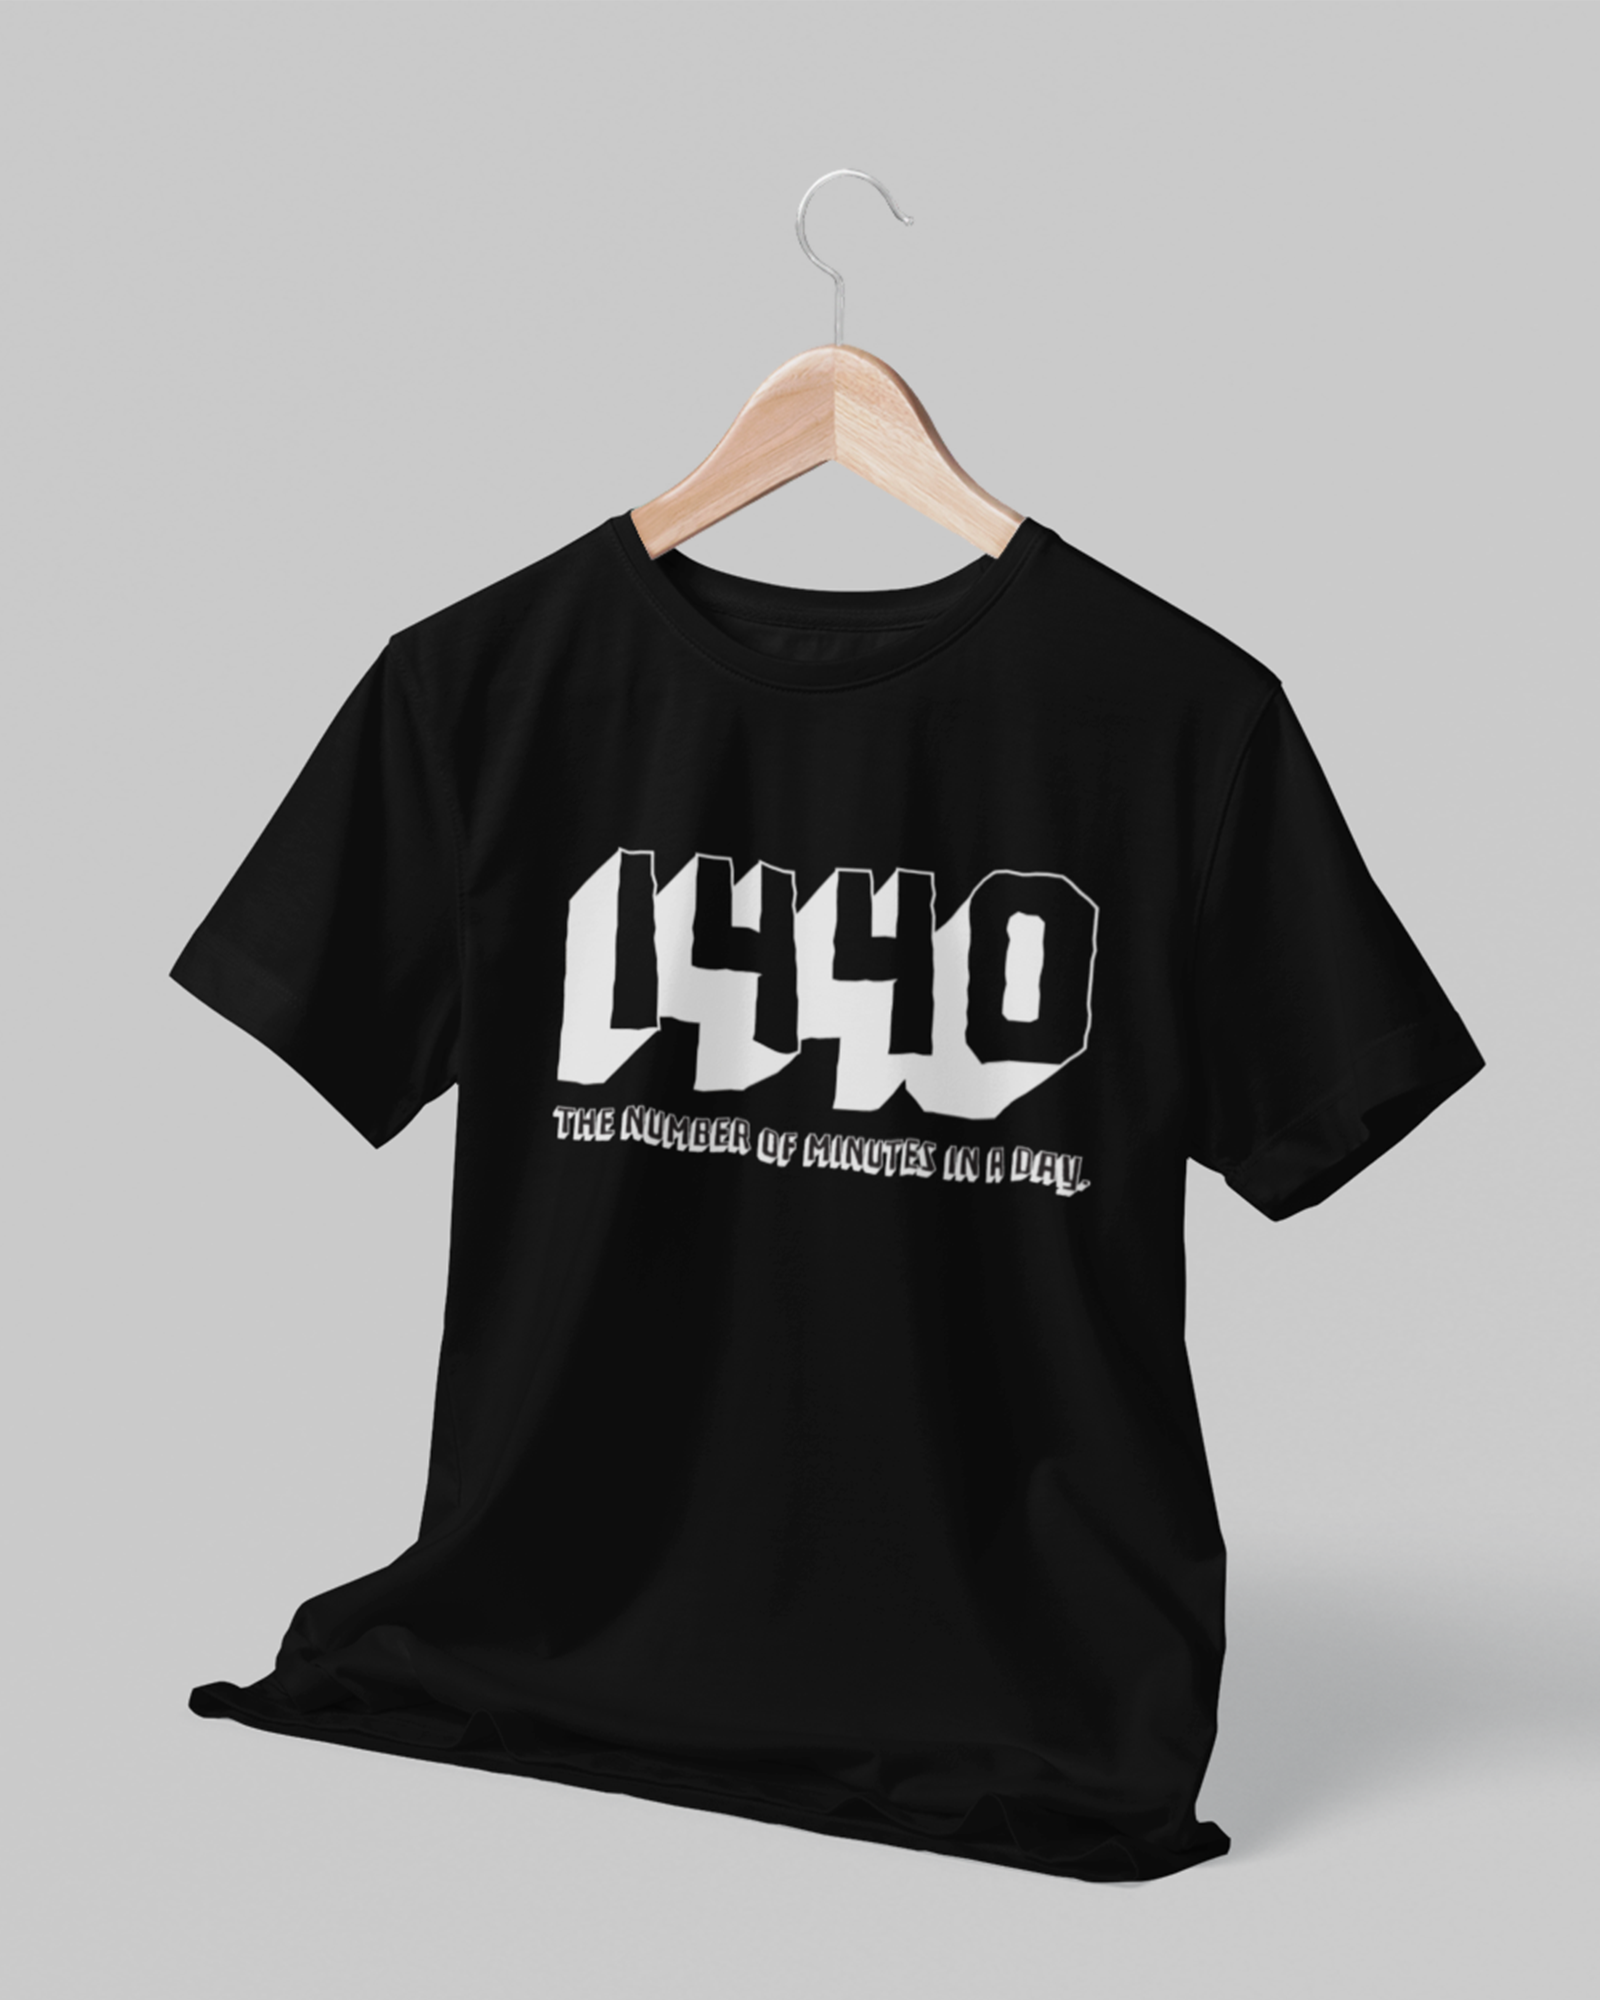 1440 Oversized Tshirt